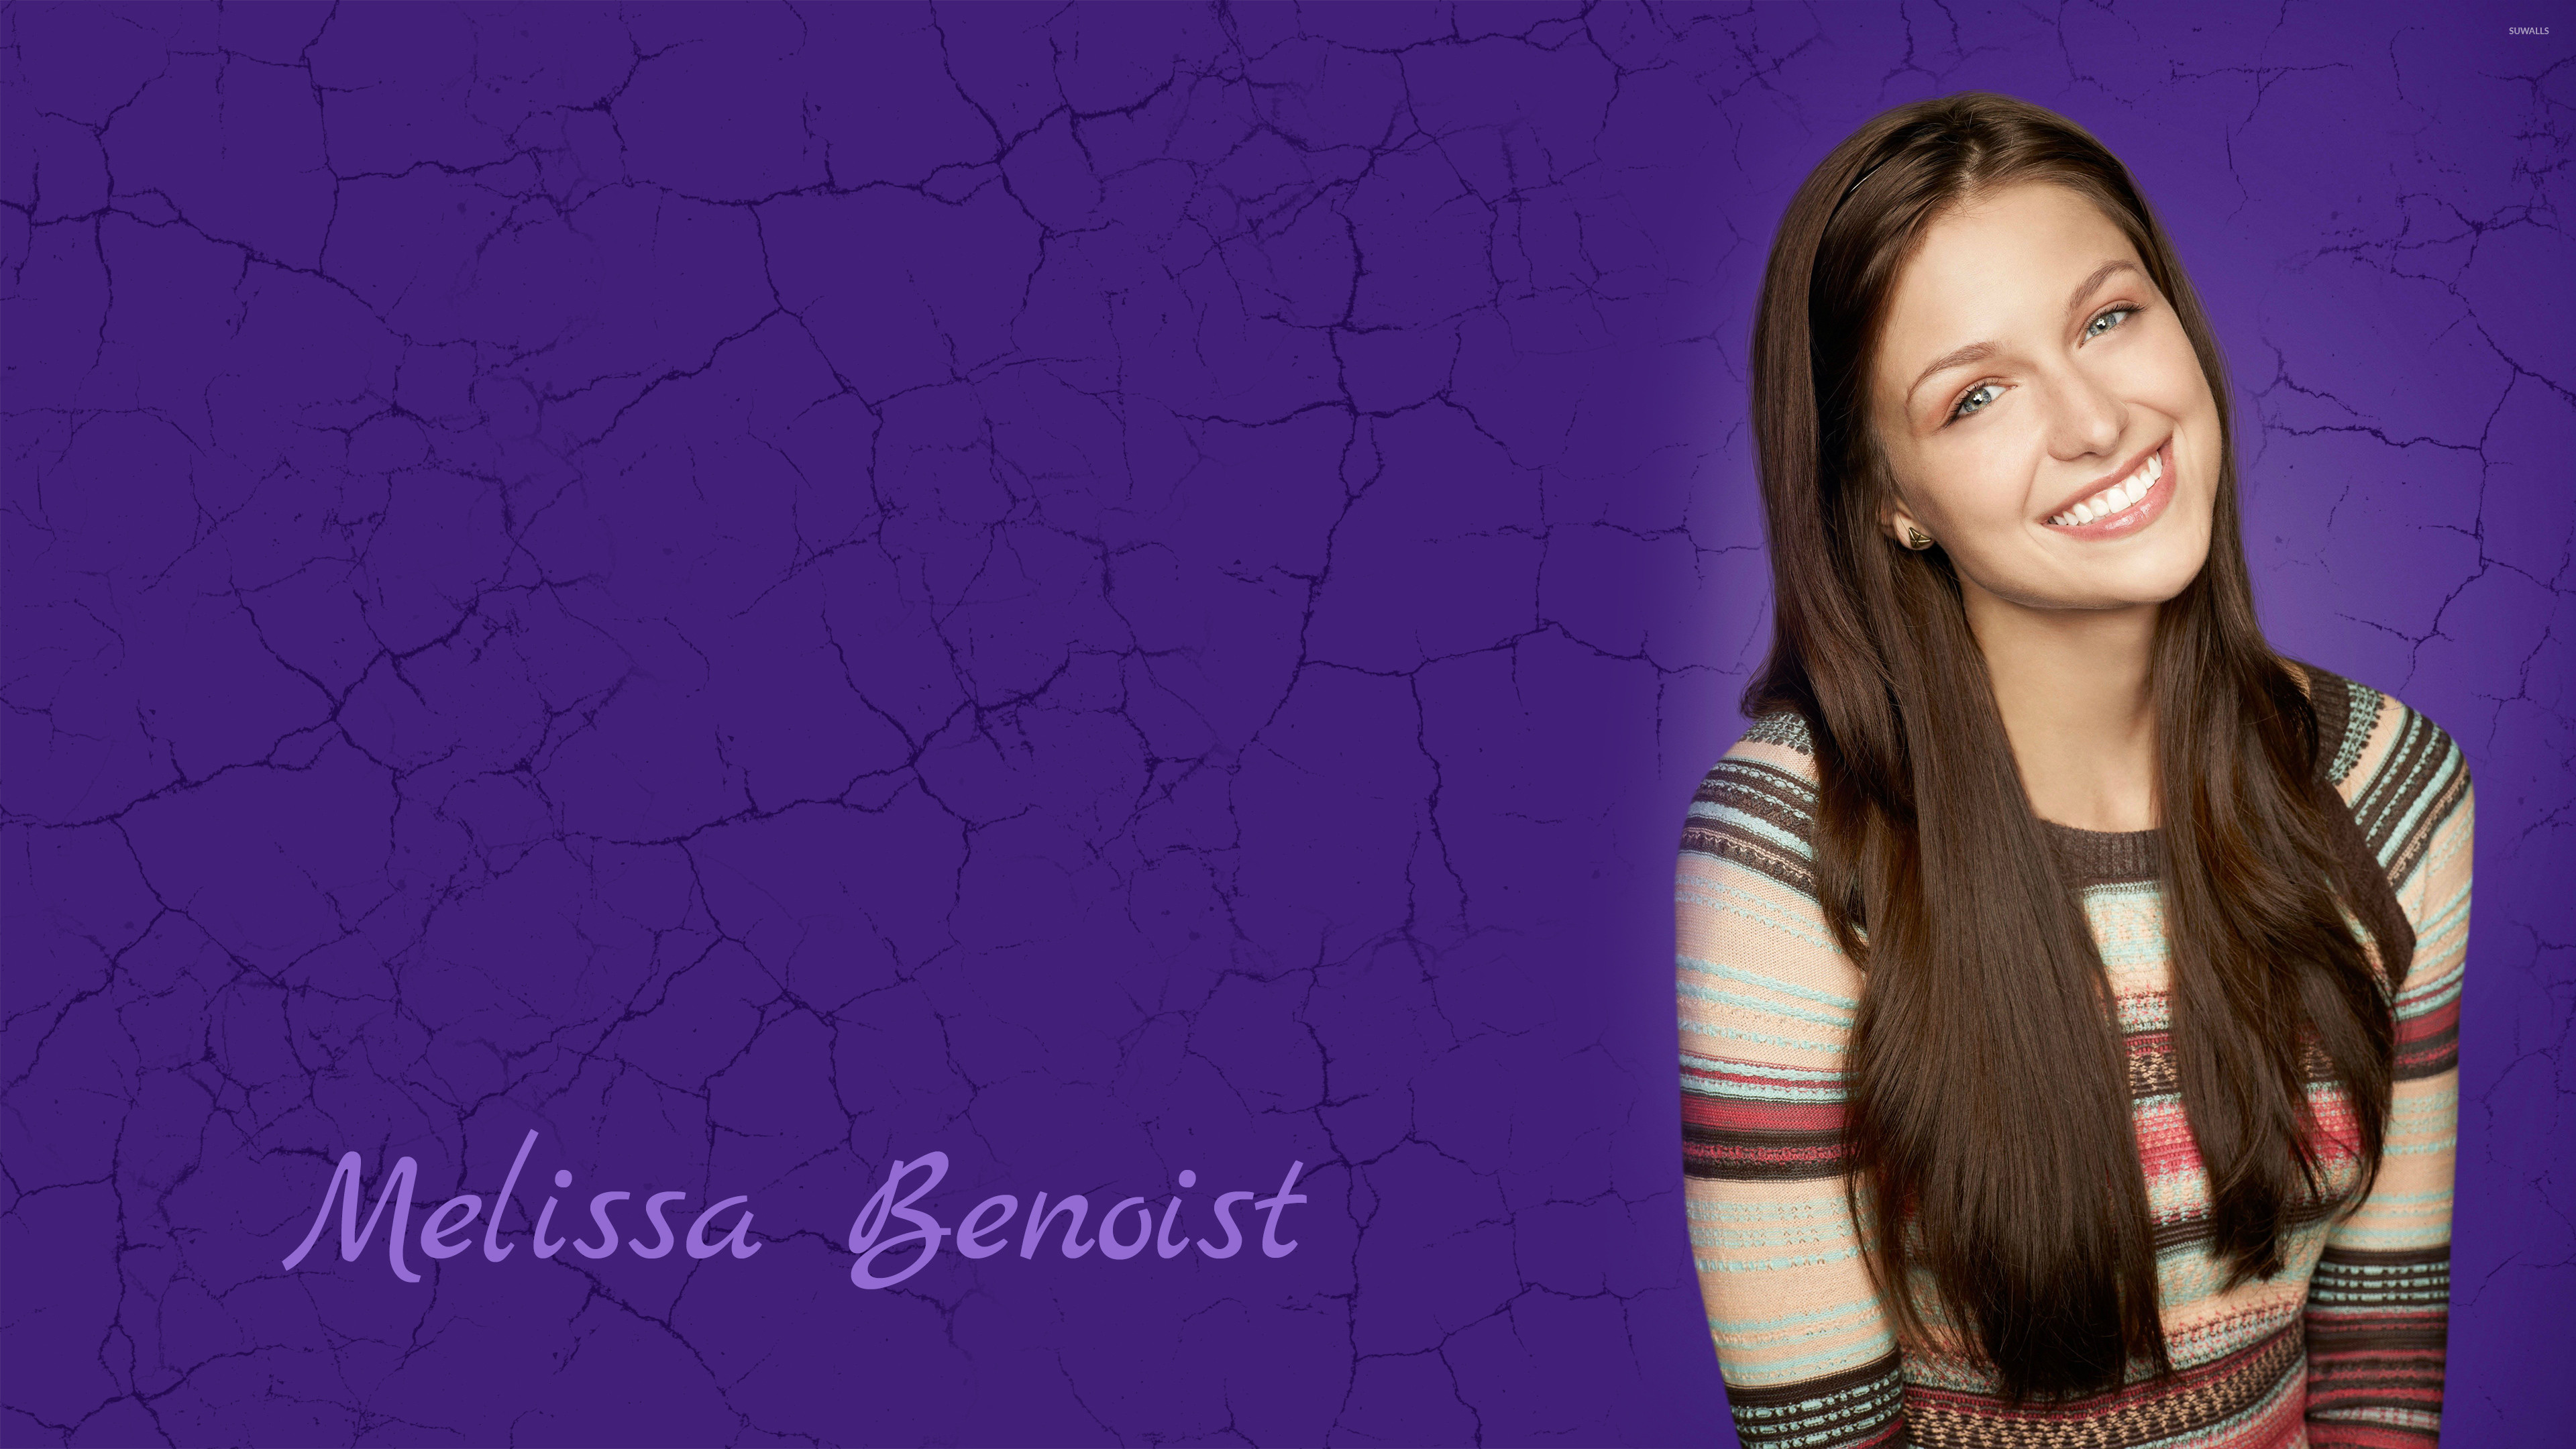 3840x2160 Melissa Benoist as Marley Rose in Glee wallpaper